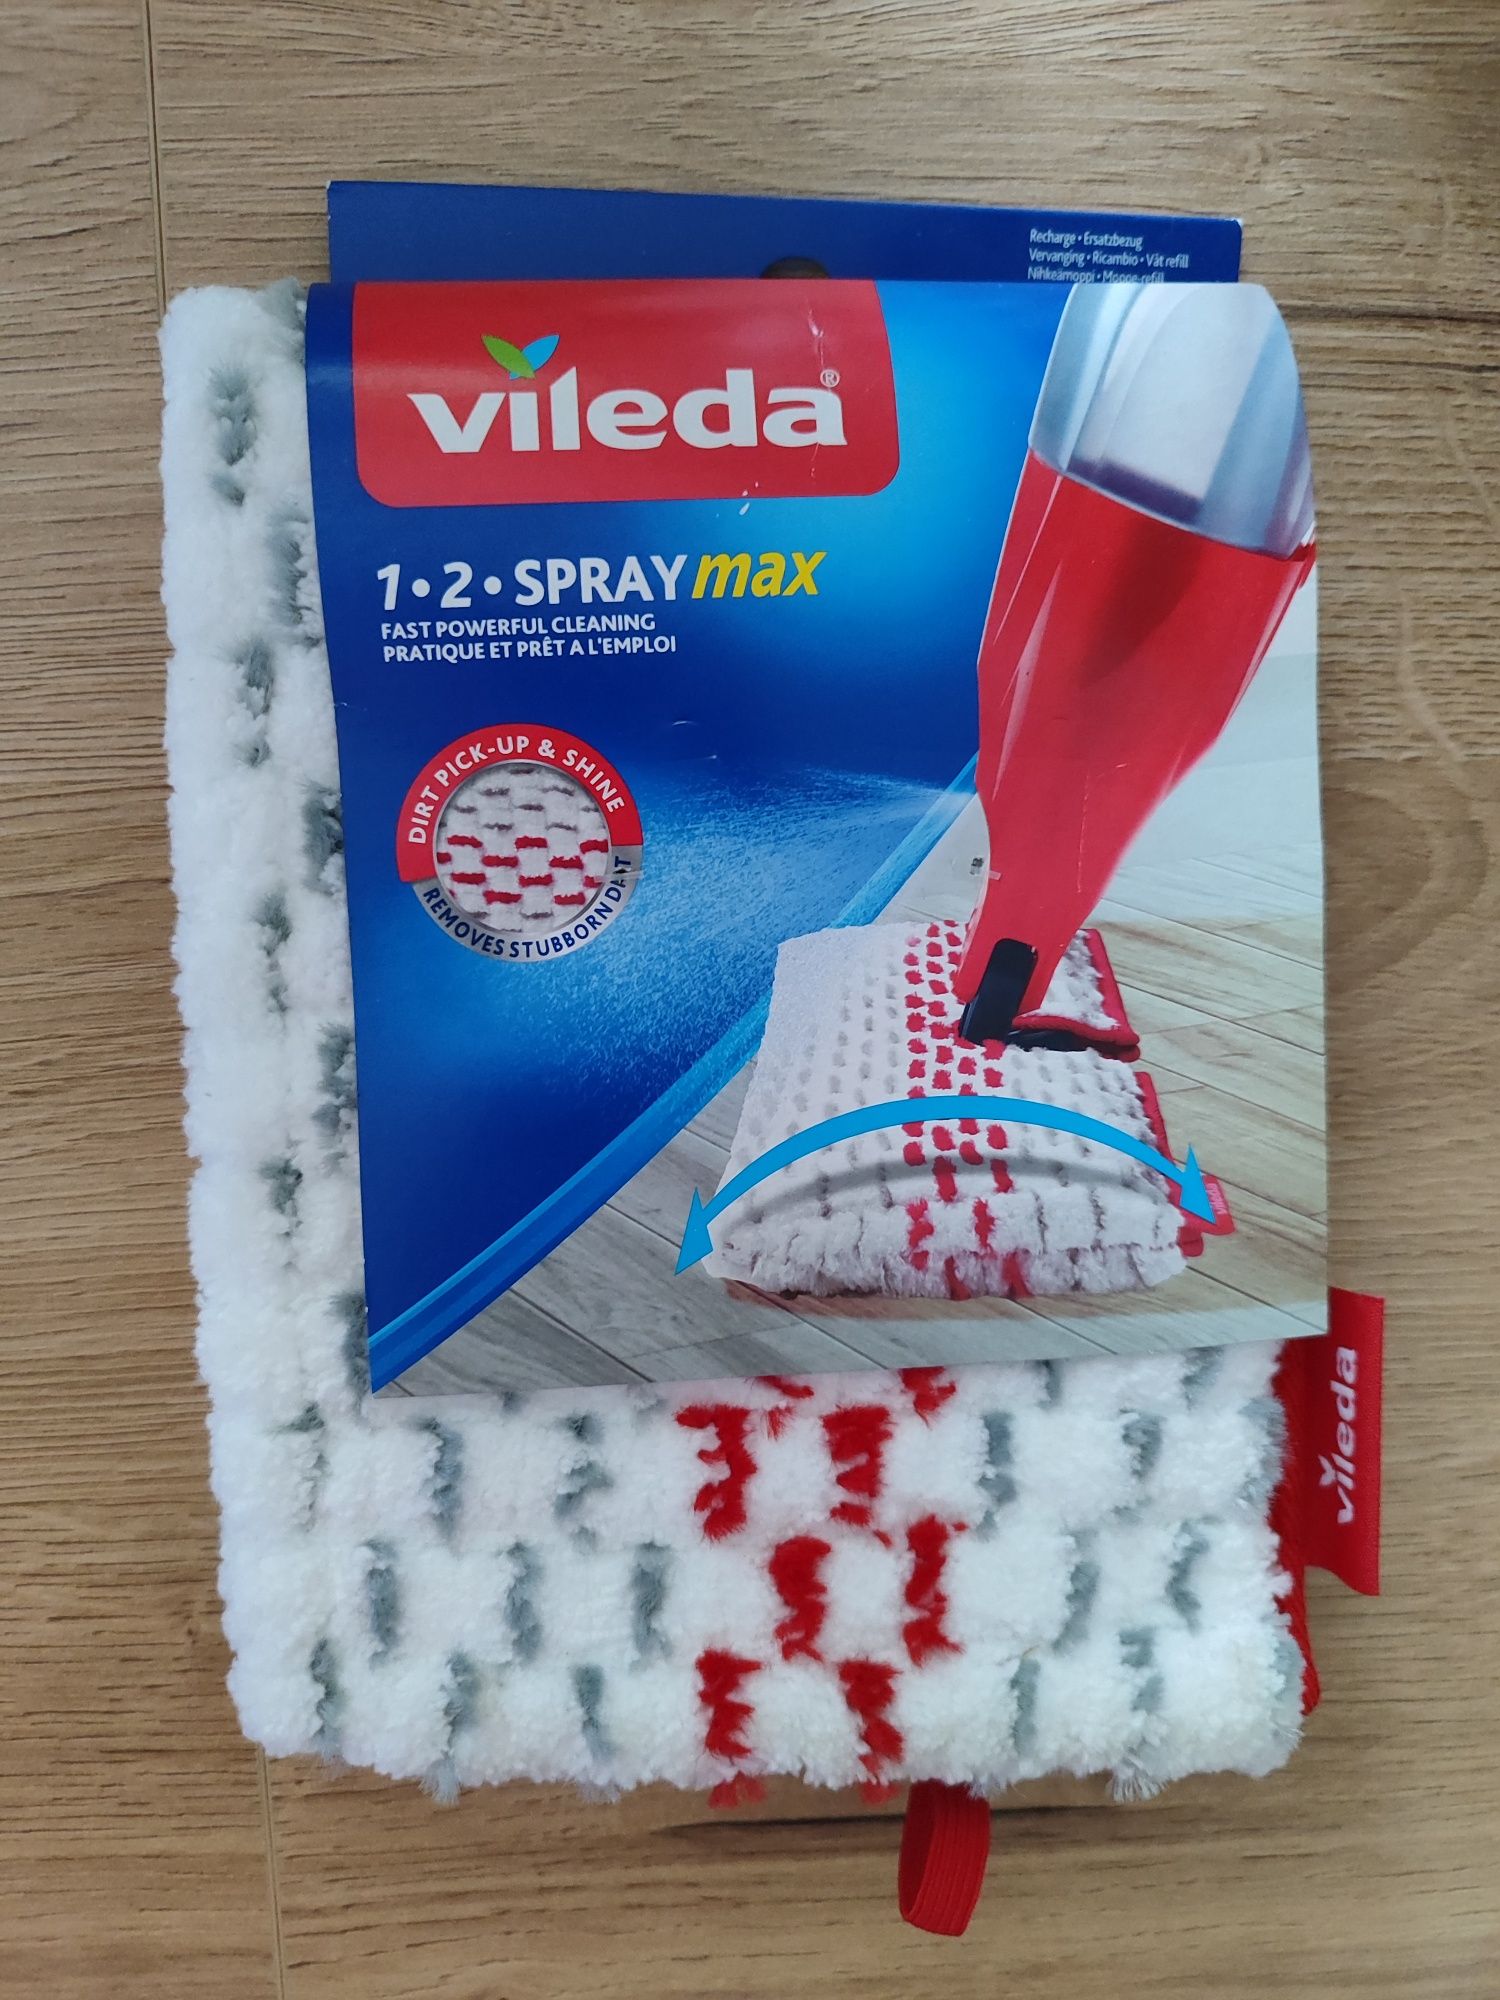 Wkład do mopa Vileda 1 - 2 Spray Max Łódź Górna •